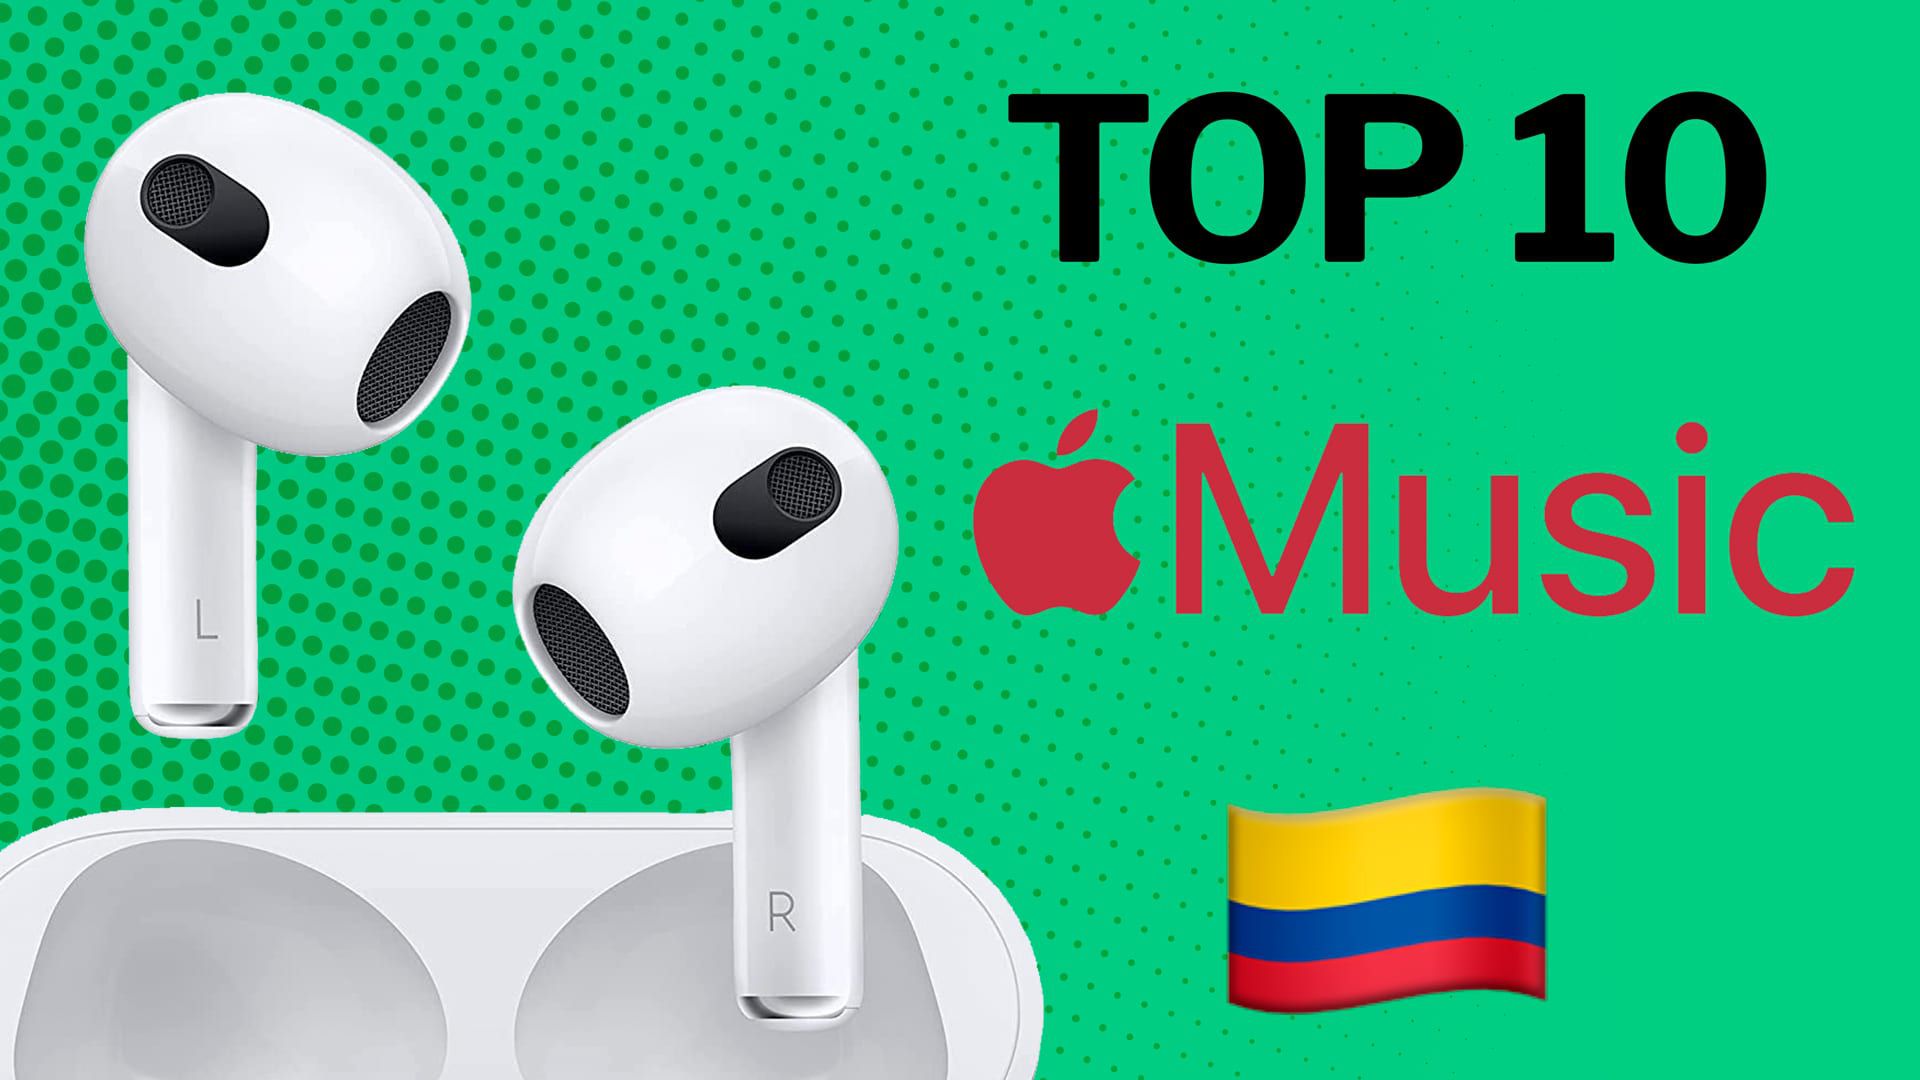 Las mejores melodías para escuchar en Apple Colombia en cualquier momento y lugar